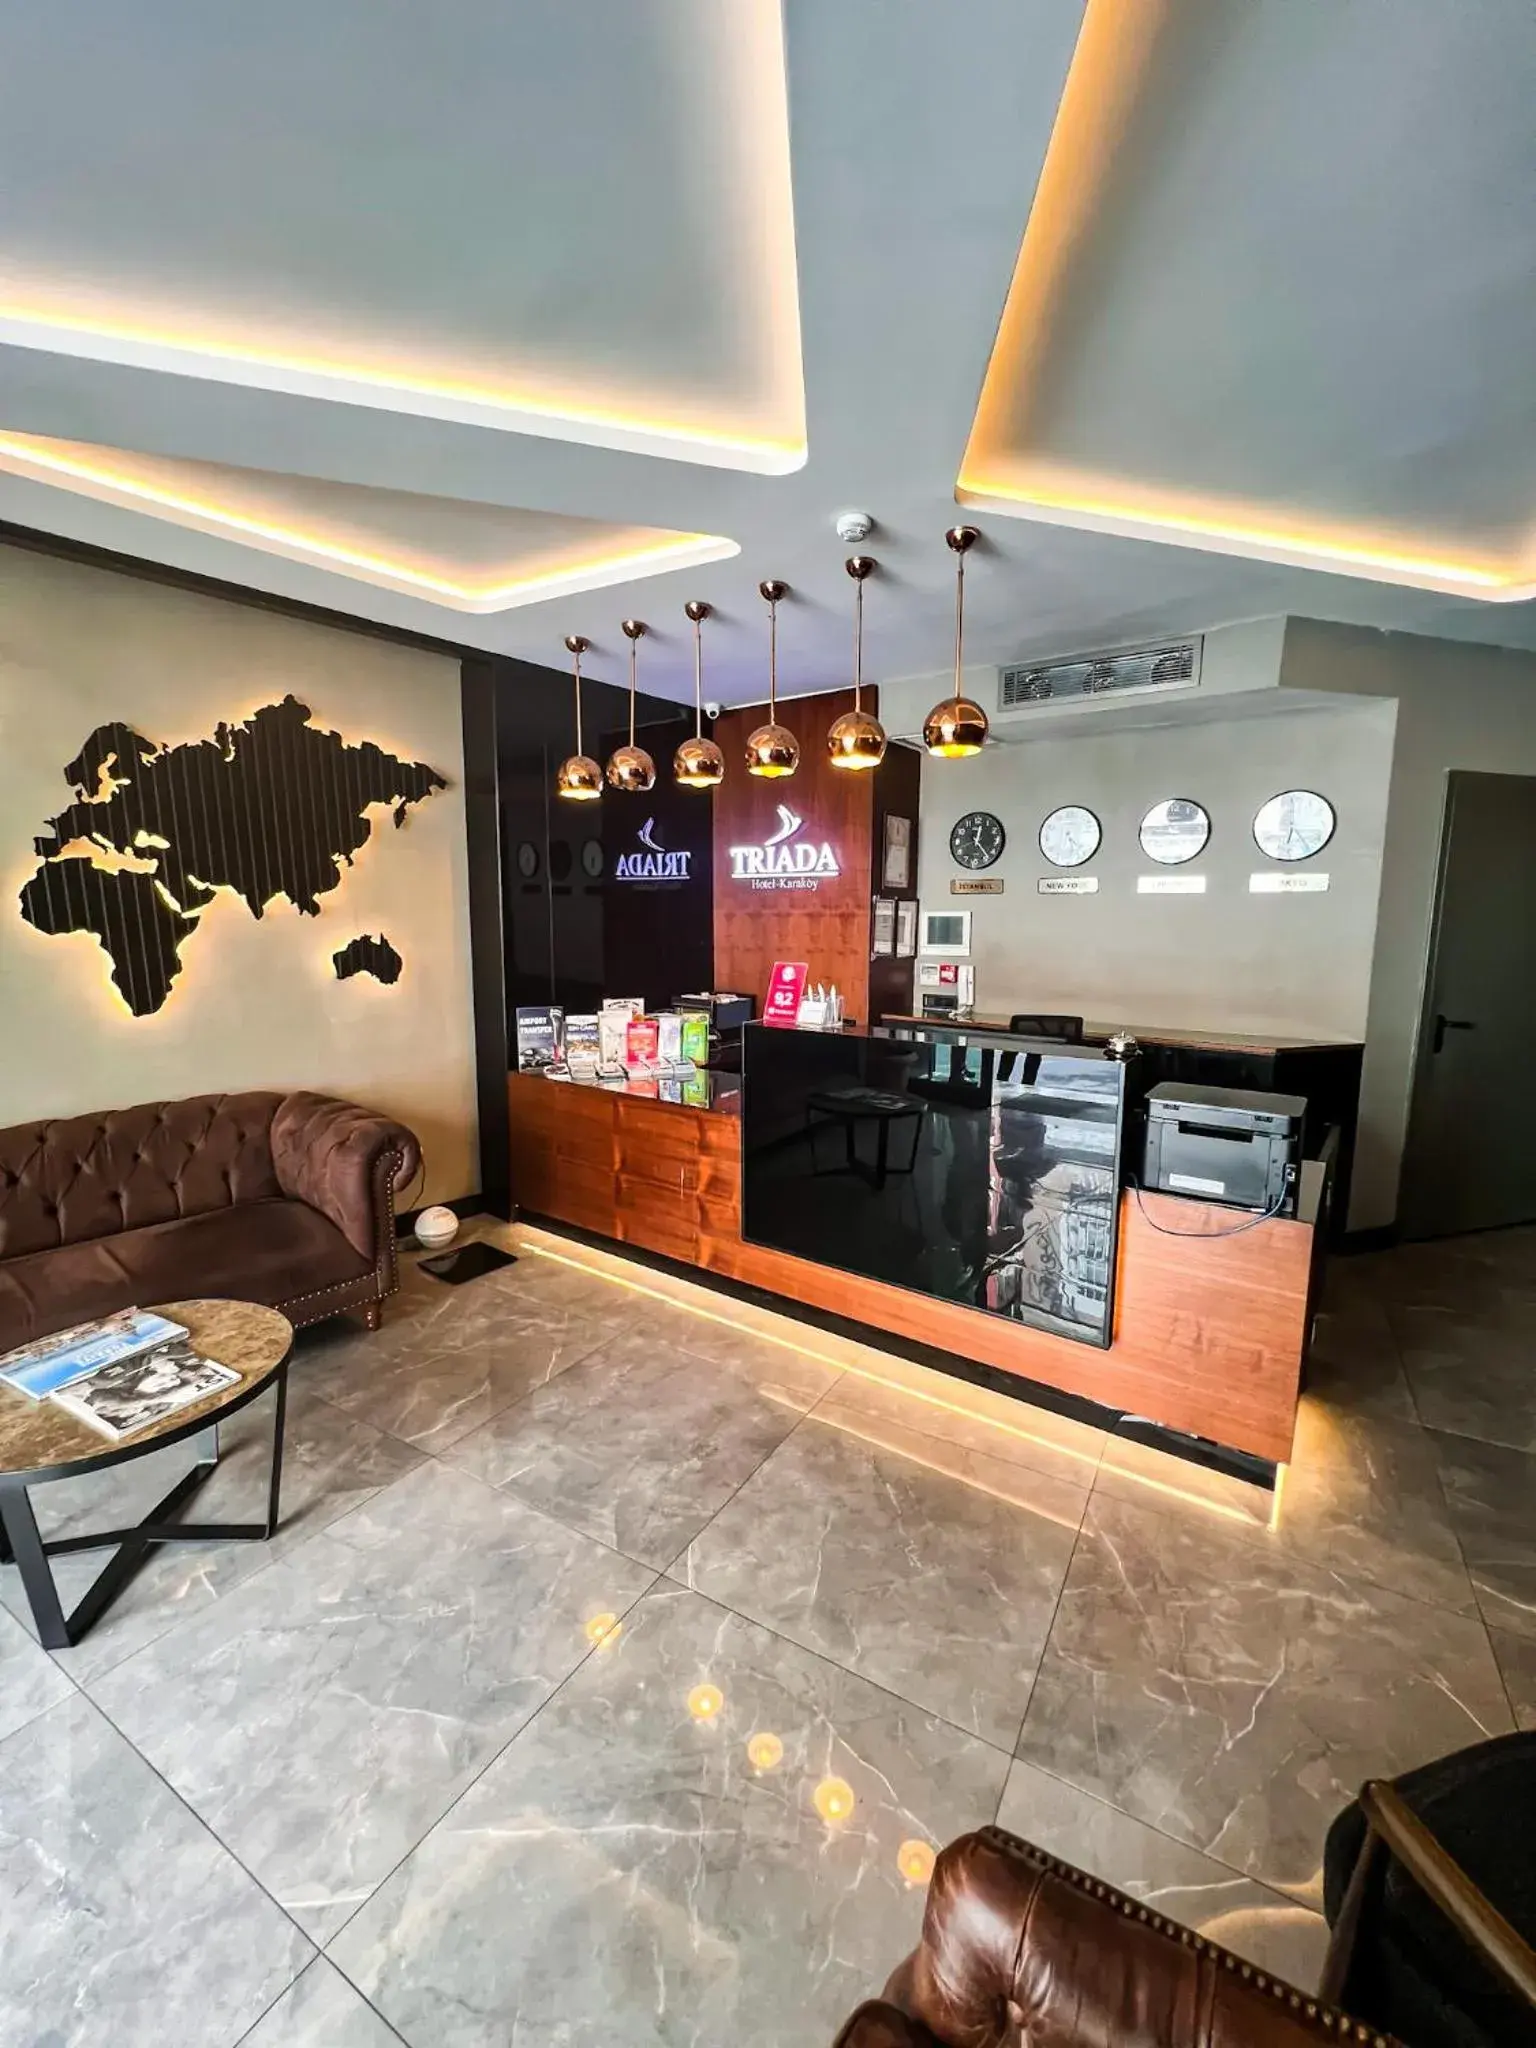 Lobby or reception, Lobby/Reception in Triada Hotel Karaköy